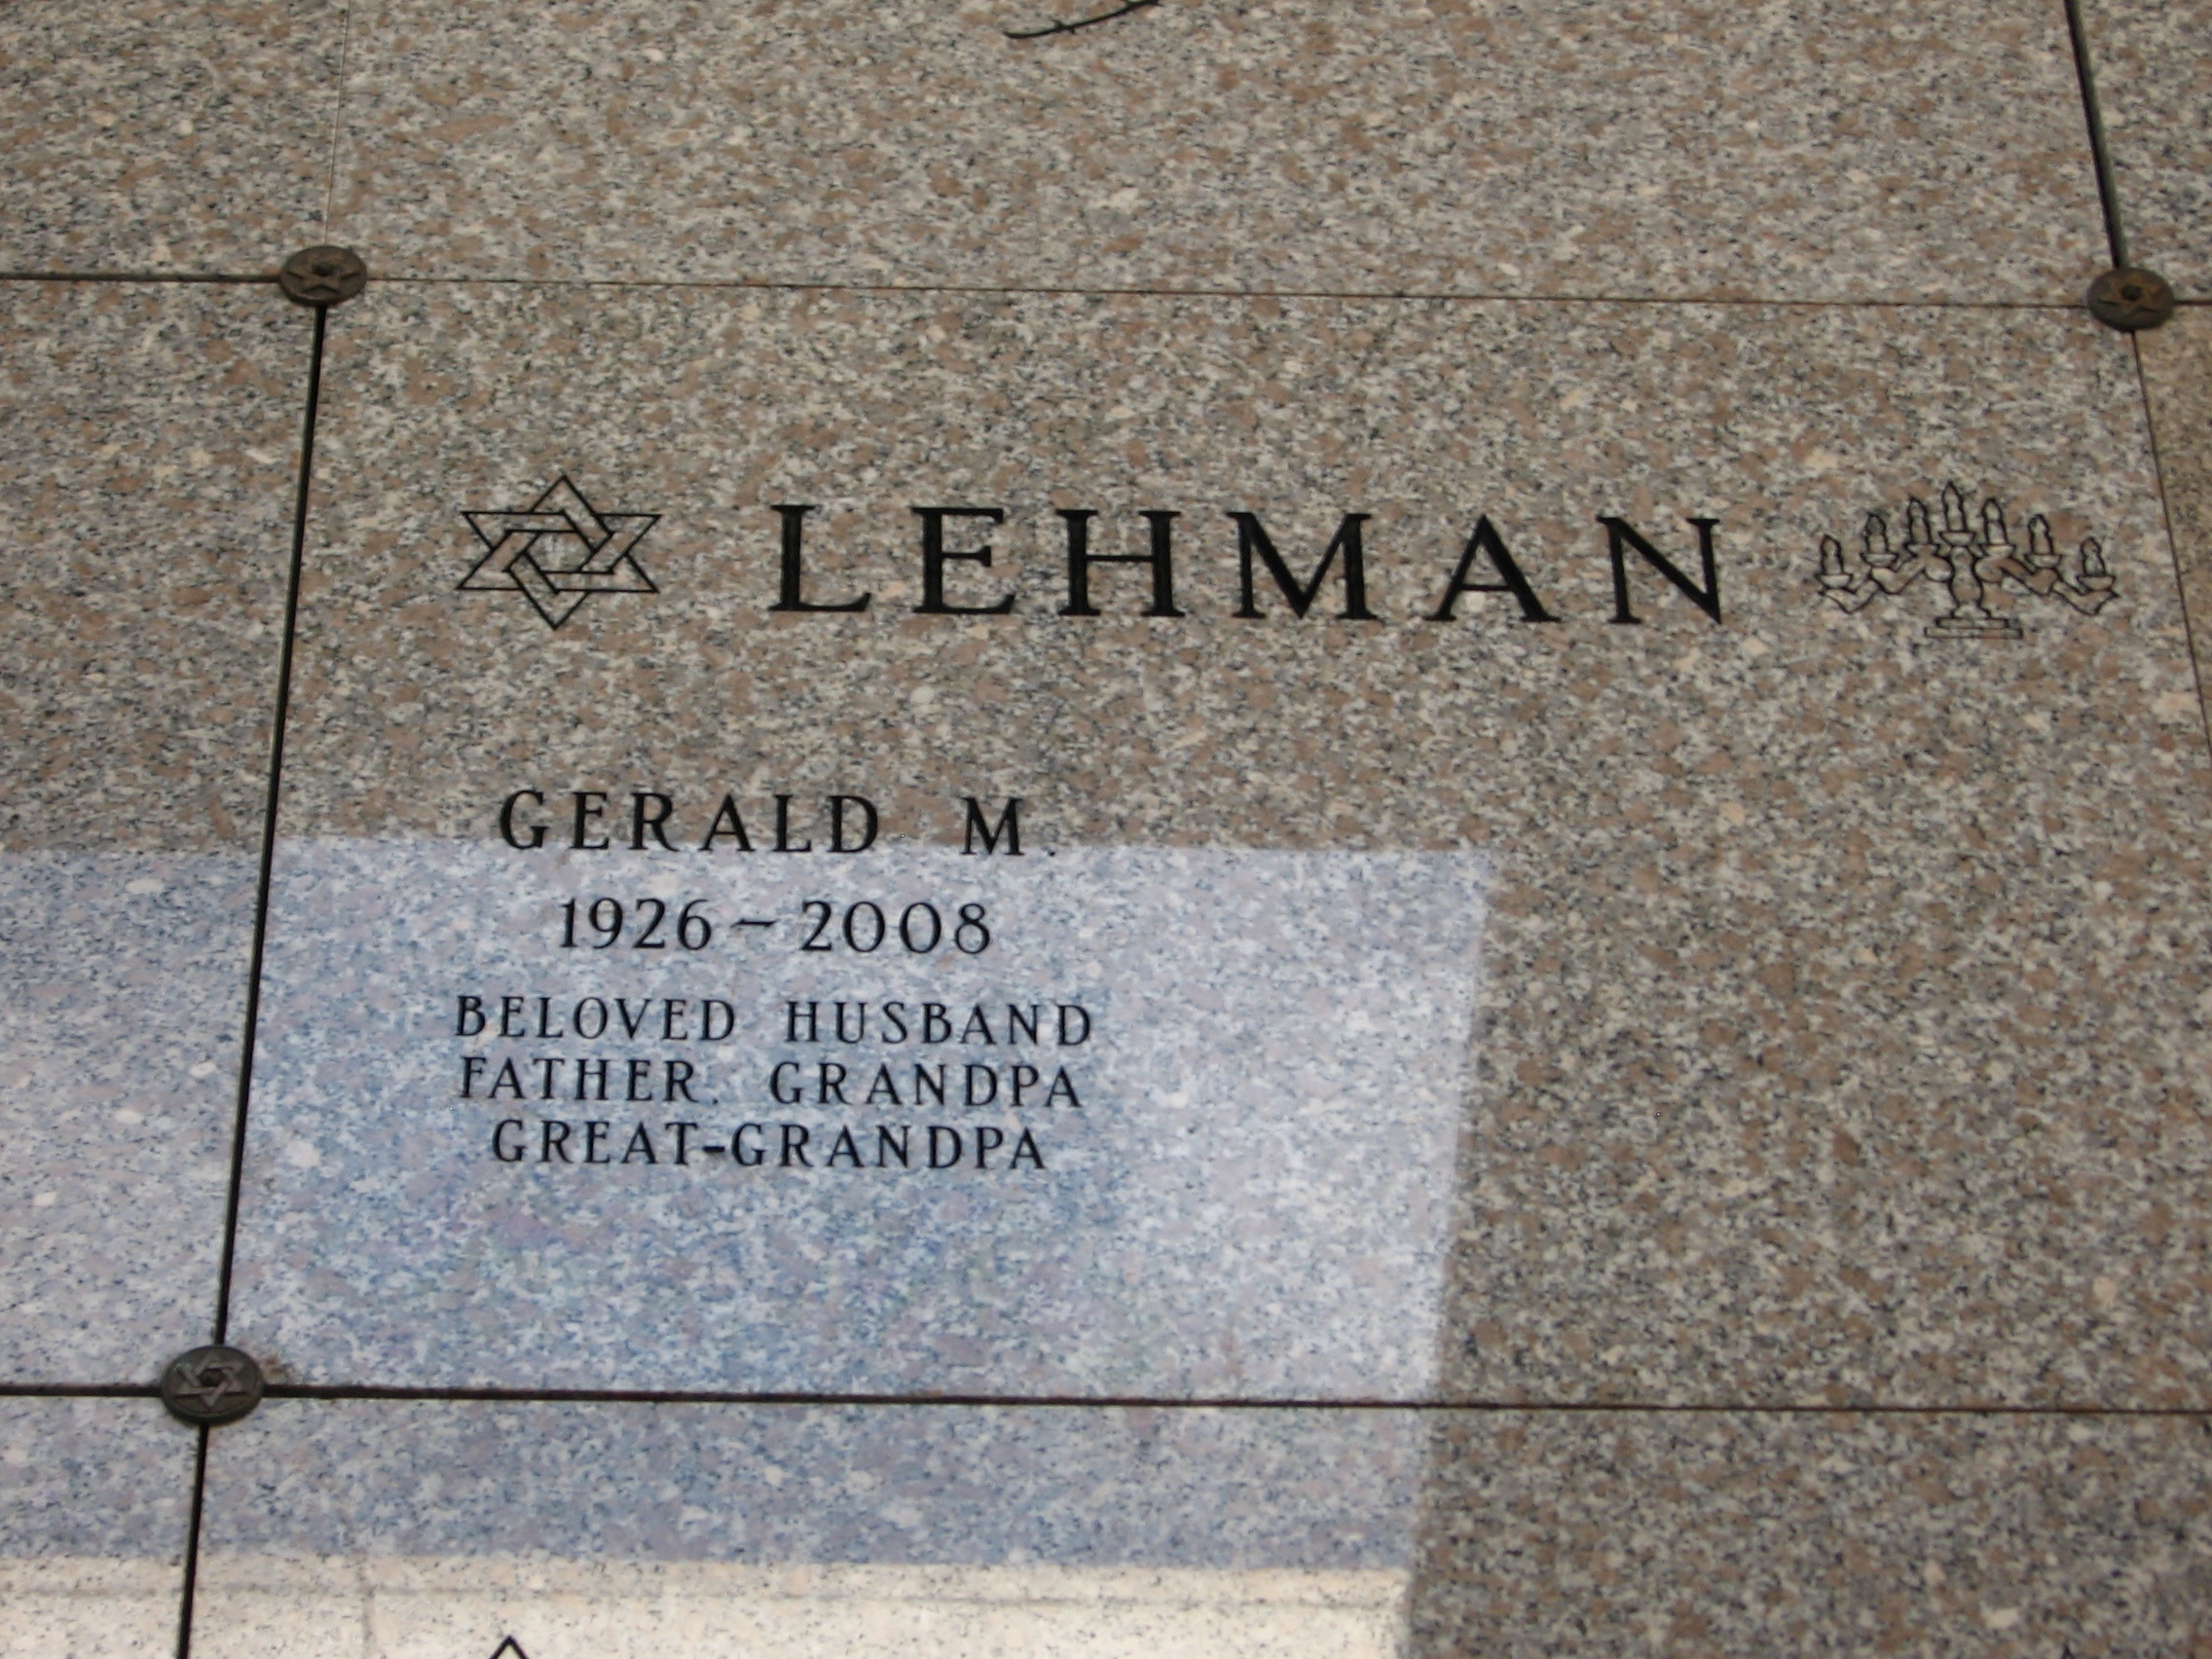 Gerald M Lehman